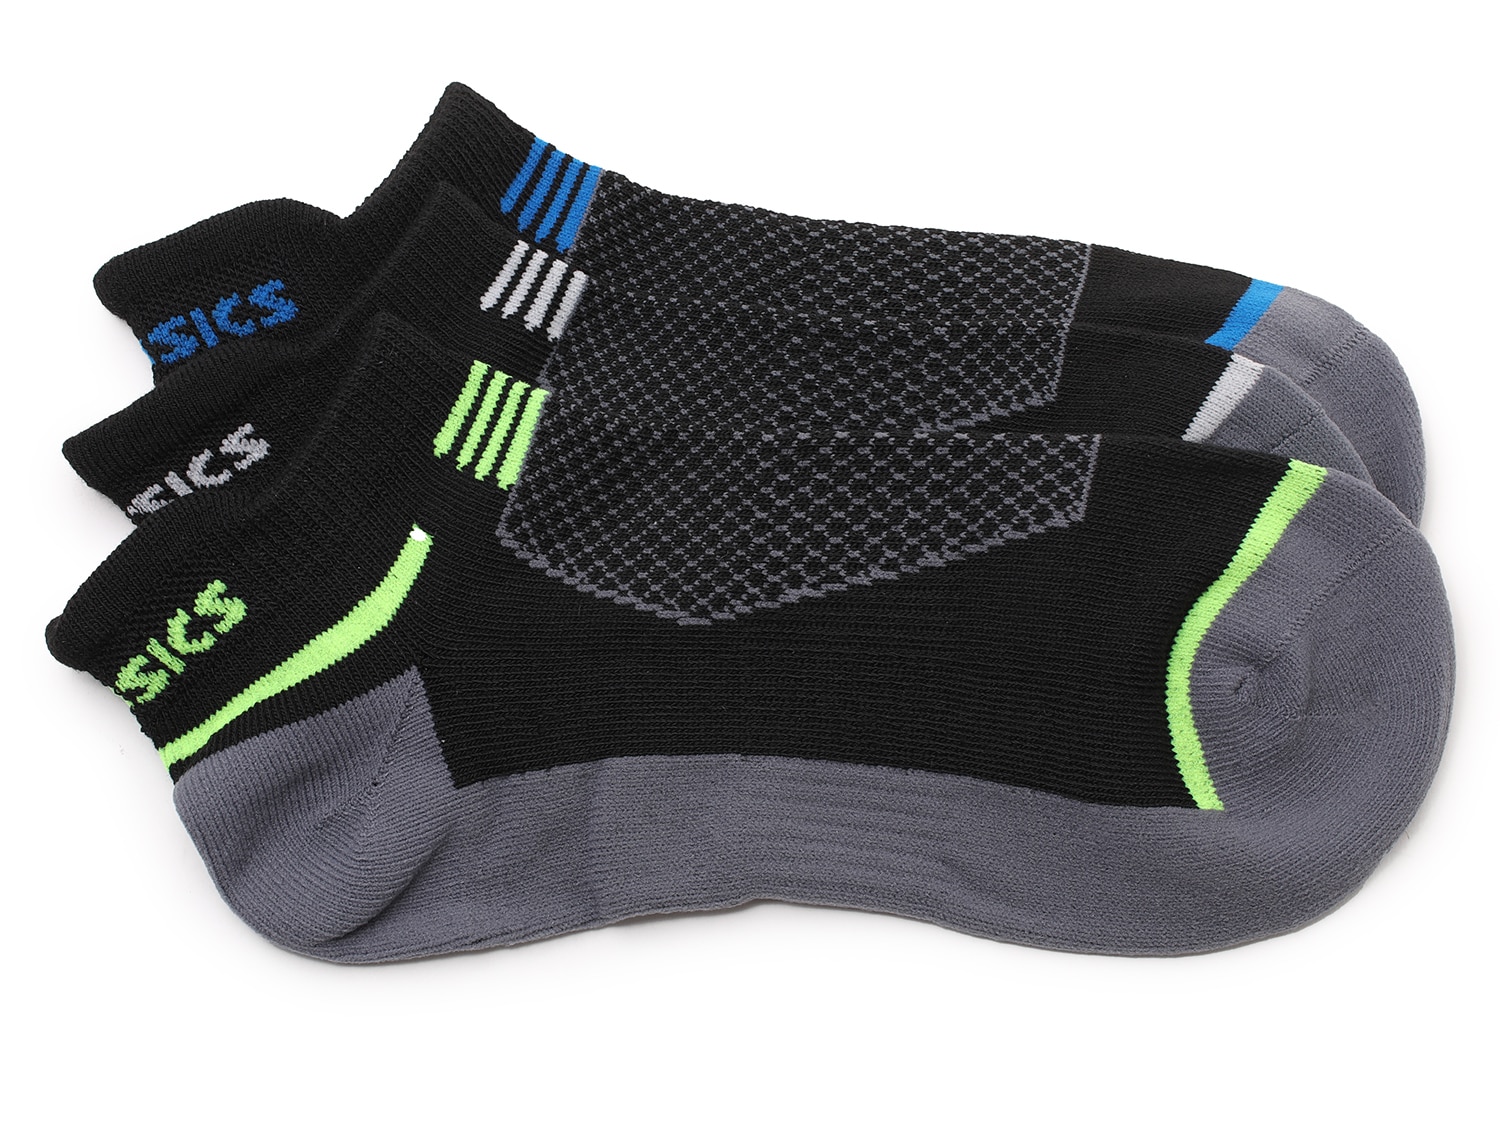 ASICS Intensity Men's No Show Socks - 3 Pack Free Shipping | DSW